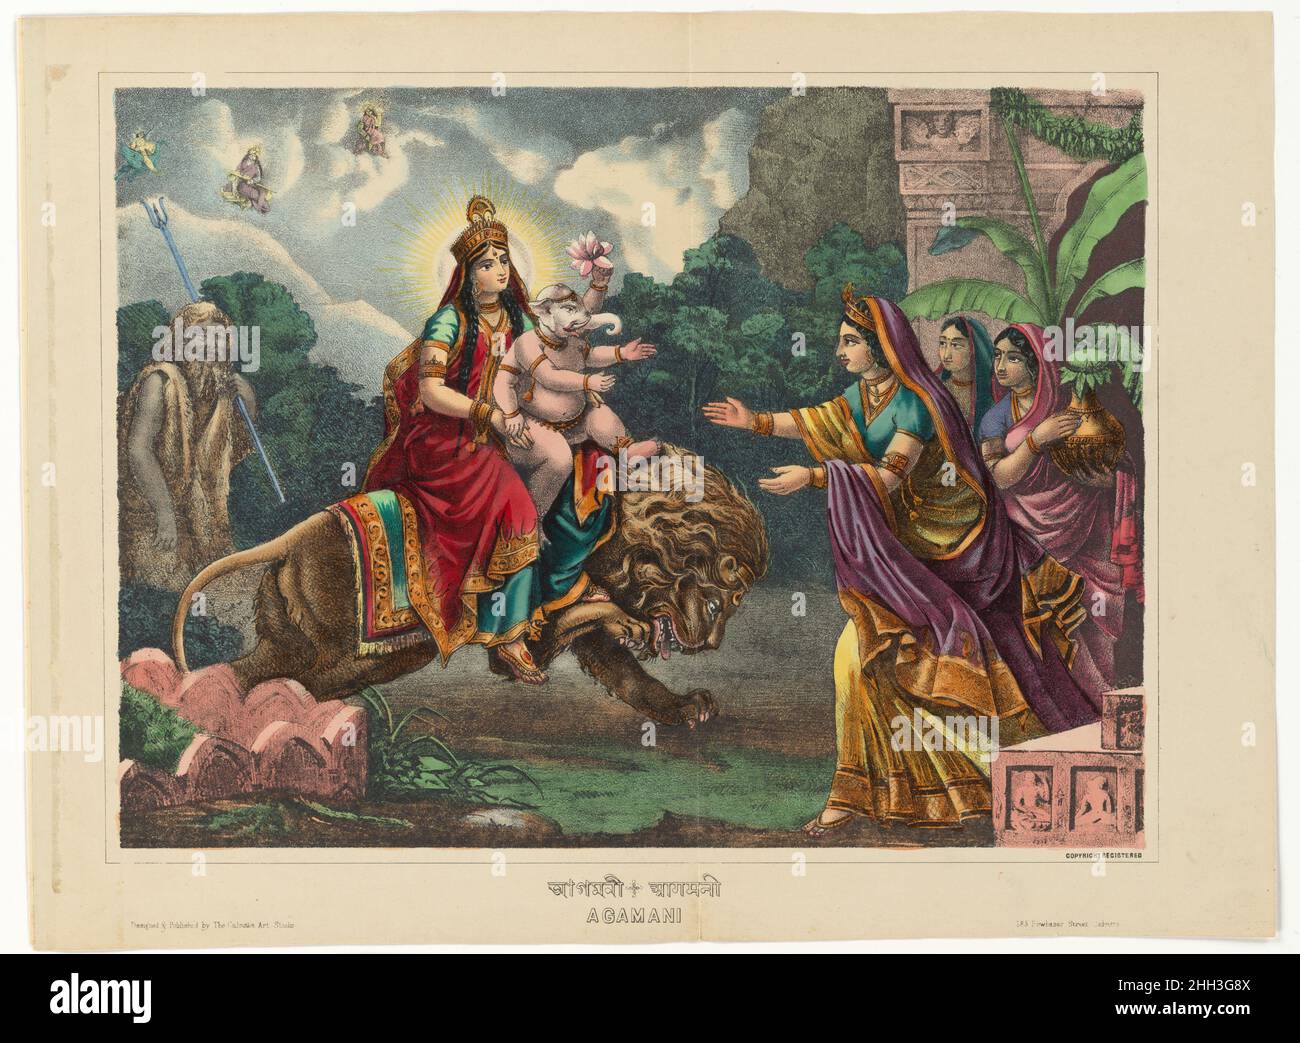 Agamani 1878–1883 West Bengala, Calcutta Agamani-vijaya è un genere di canzone popolare bengalese (Bangla) basata sulle storie di Shiva e Parvati e particolarmente favorita per il canto durante la stagione del festival Durga puja in autunno. Le canzoni raccontano di Parvati, figlia del re degli Himalaya, che sposa Shiva, apparentemente ascetica yoga senza mezzi di sostegno visibili. La madre di Parvati, Menace, cercò il permesso di Shiva per la sua figlia di visitare la casa dei genitori. Le canzoni composte sul suo ritorno a casa sono note come canzoni Agamani. Qui vediamo il bel e regale ret Parvati Foto Stock